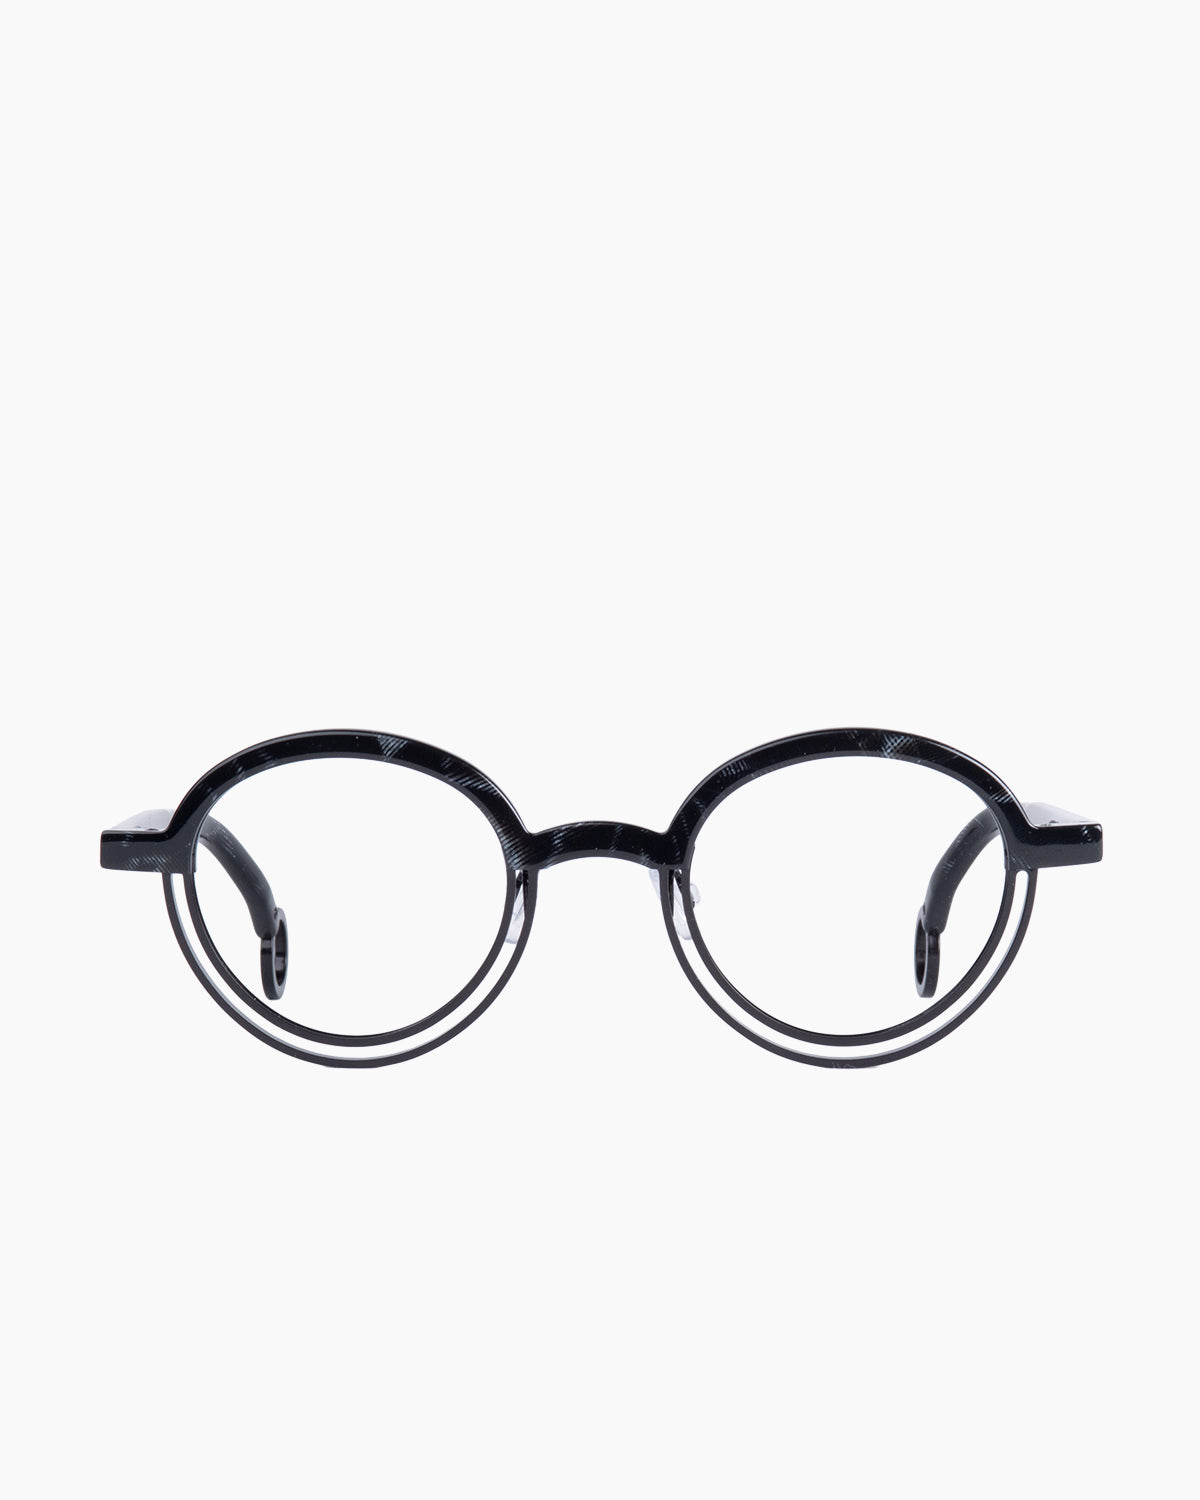 Theo - BUMPER - 2 | glasses bar